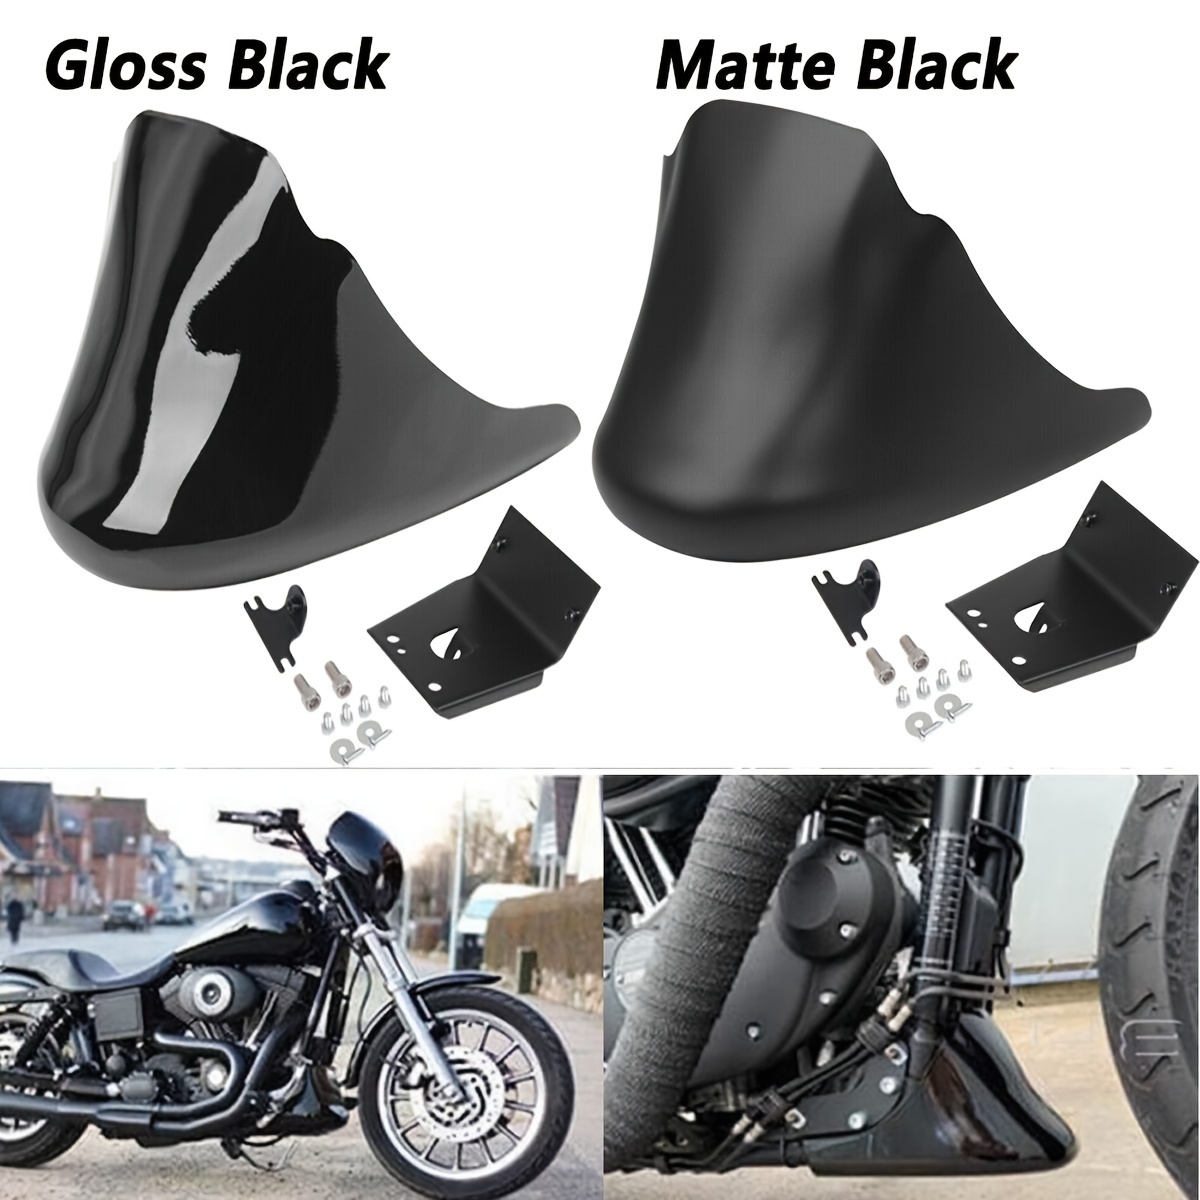 6,5 zoll Universal Motorrad Scheinwerfer Nebel Lampe Protector Schutz  Grille Abdeckung Für Ducati Chopper Yamaha Cafe Racer